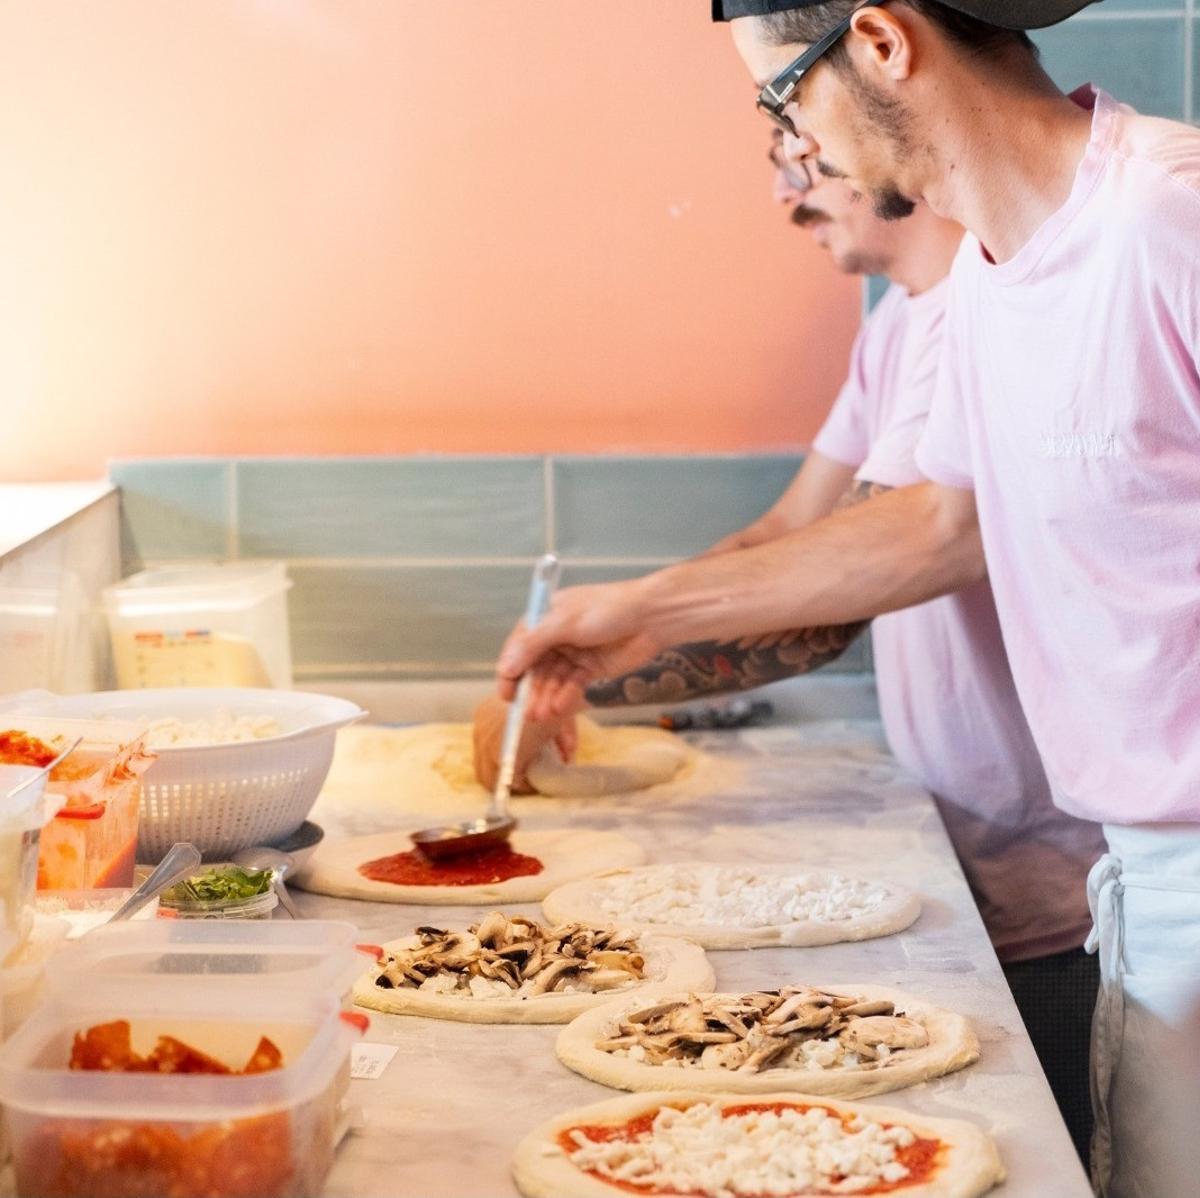 Pizzería La Candella: La historia de la pizza napolitana en Canarias, apoyando el campo canario